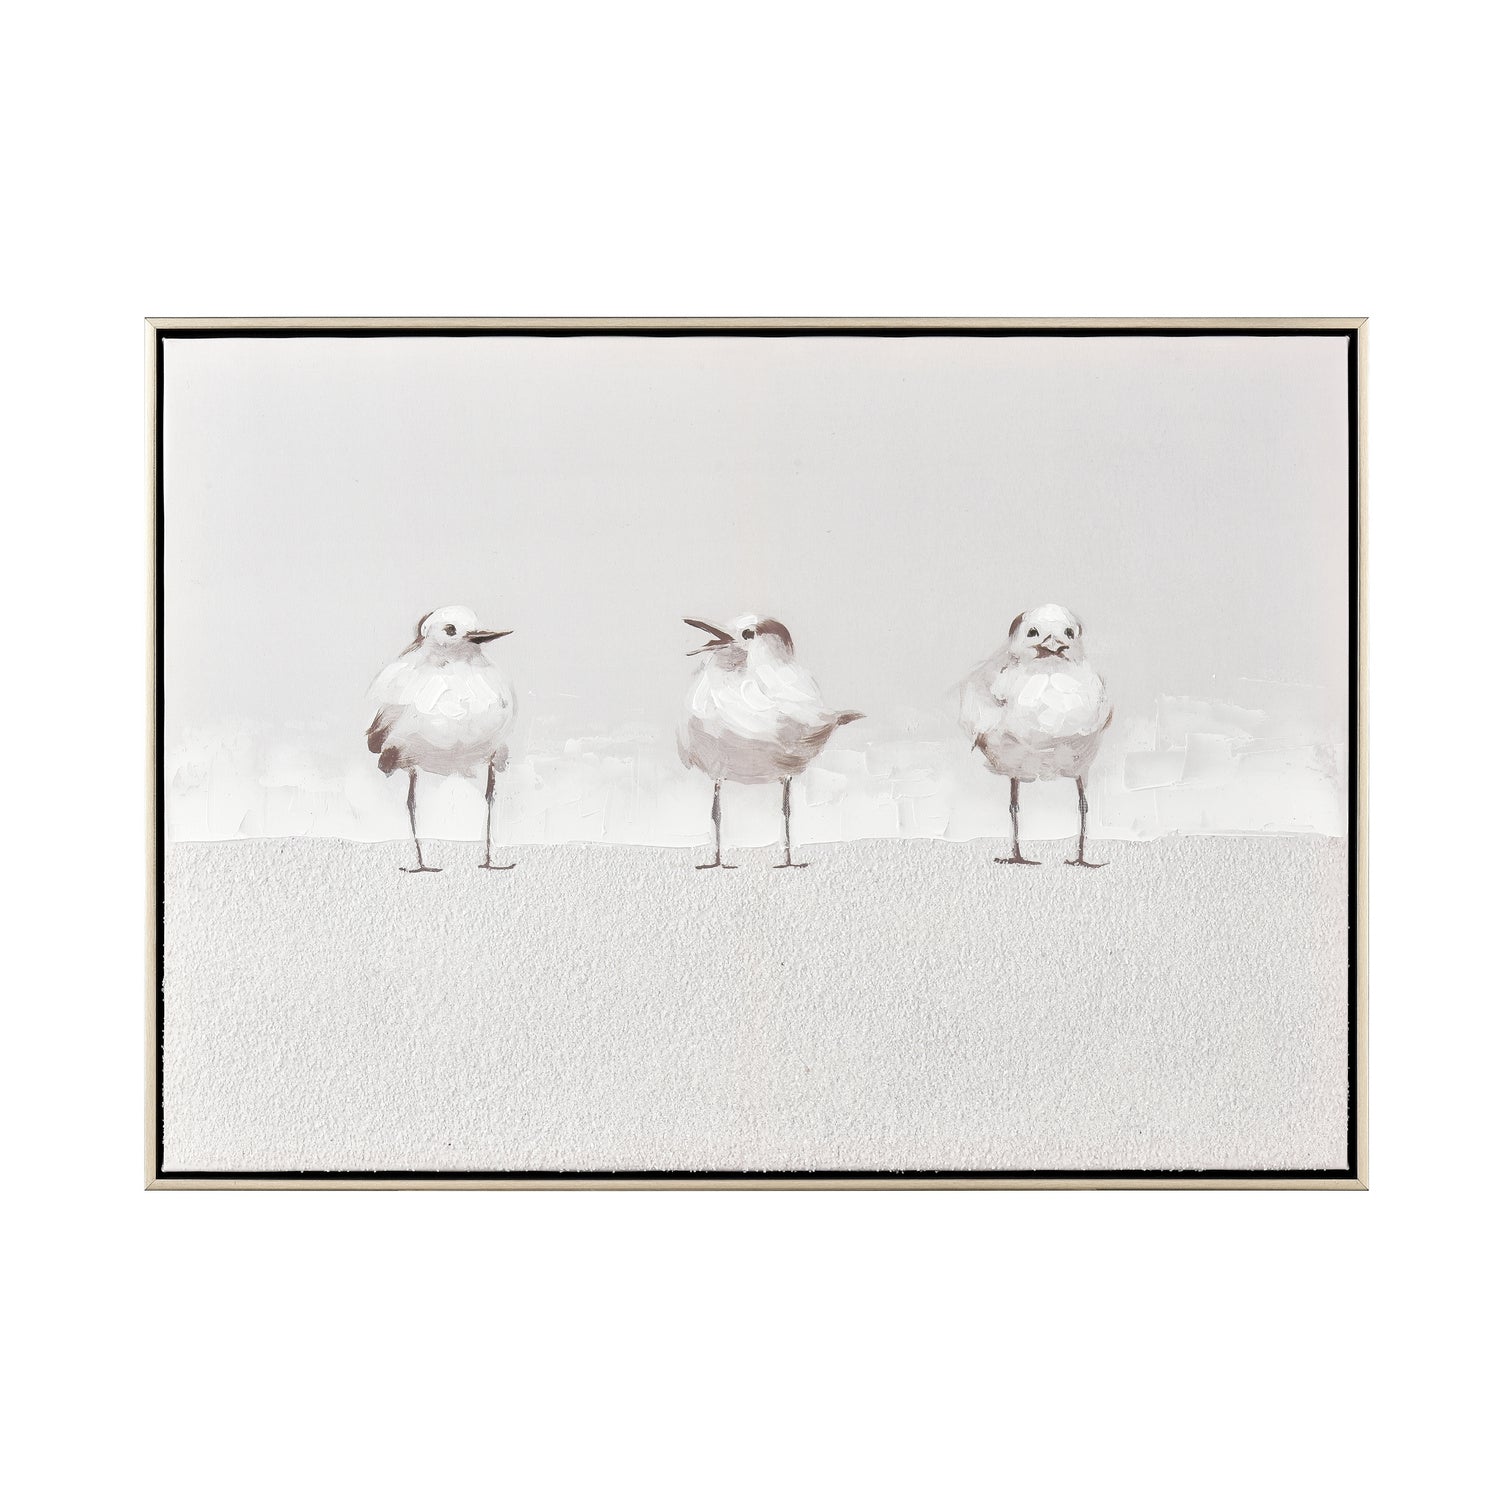 ELK Home - S0017-10703 - Framed Wall Art - Three Gulls - White